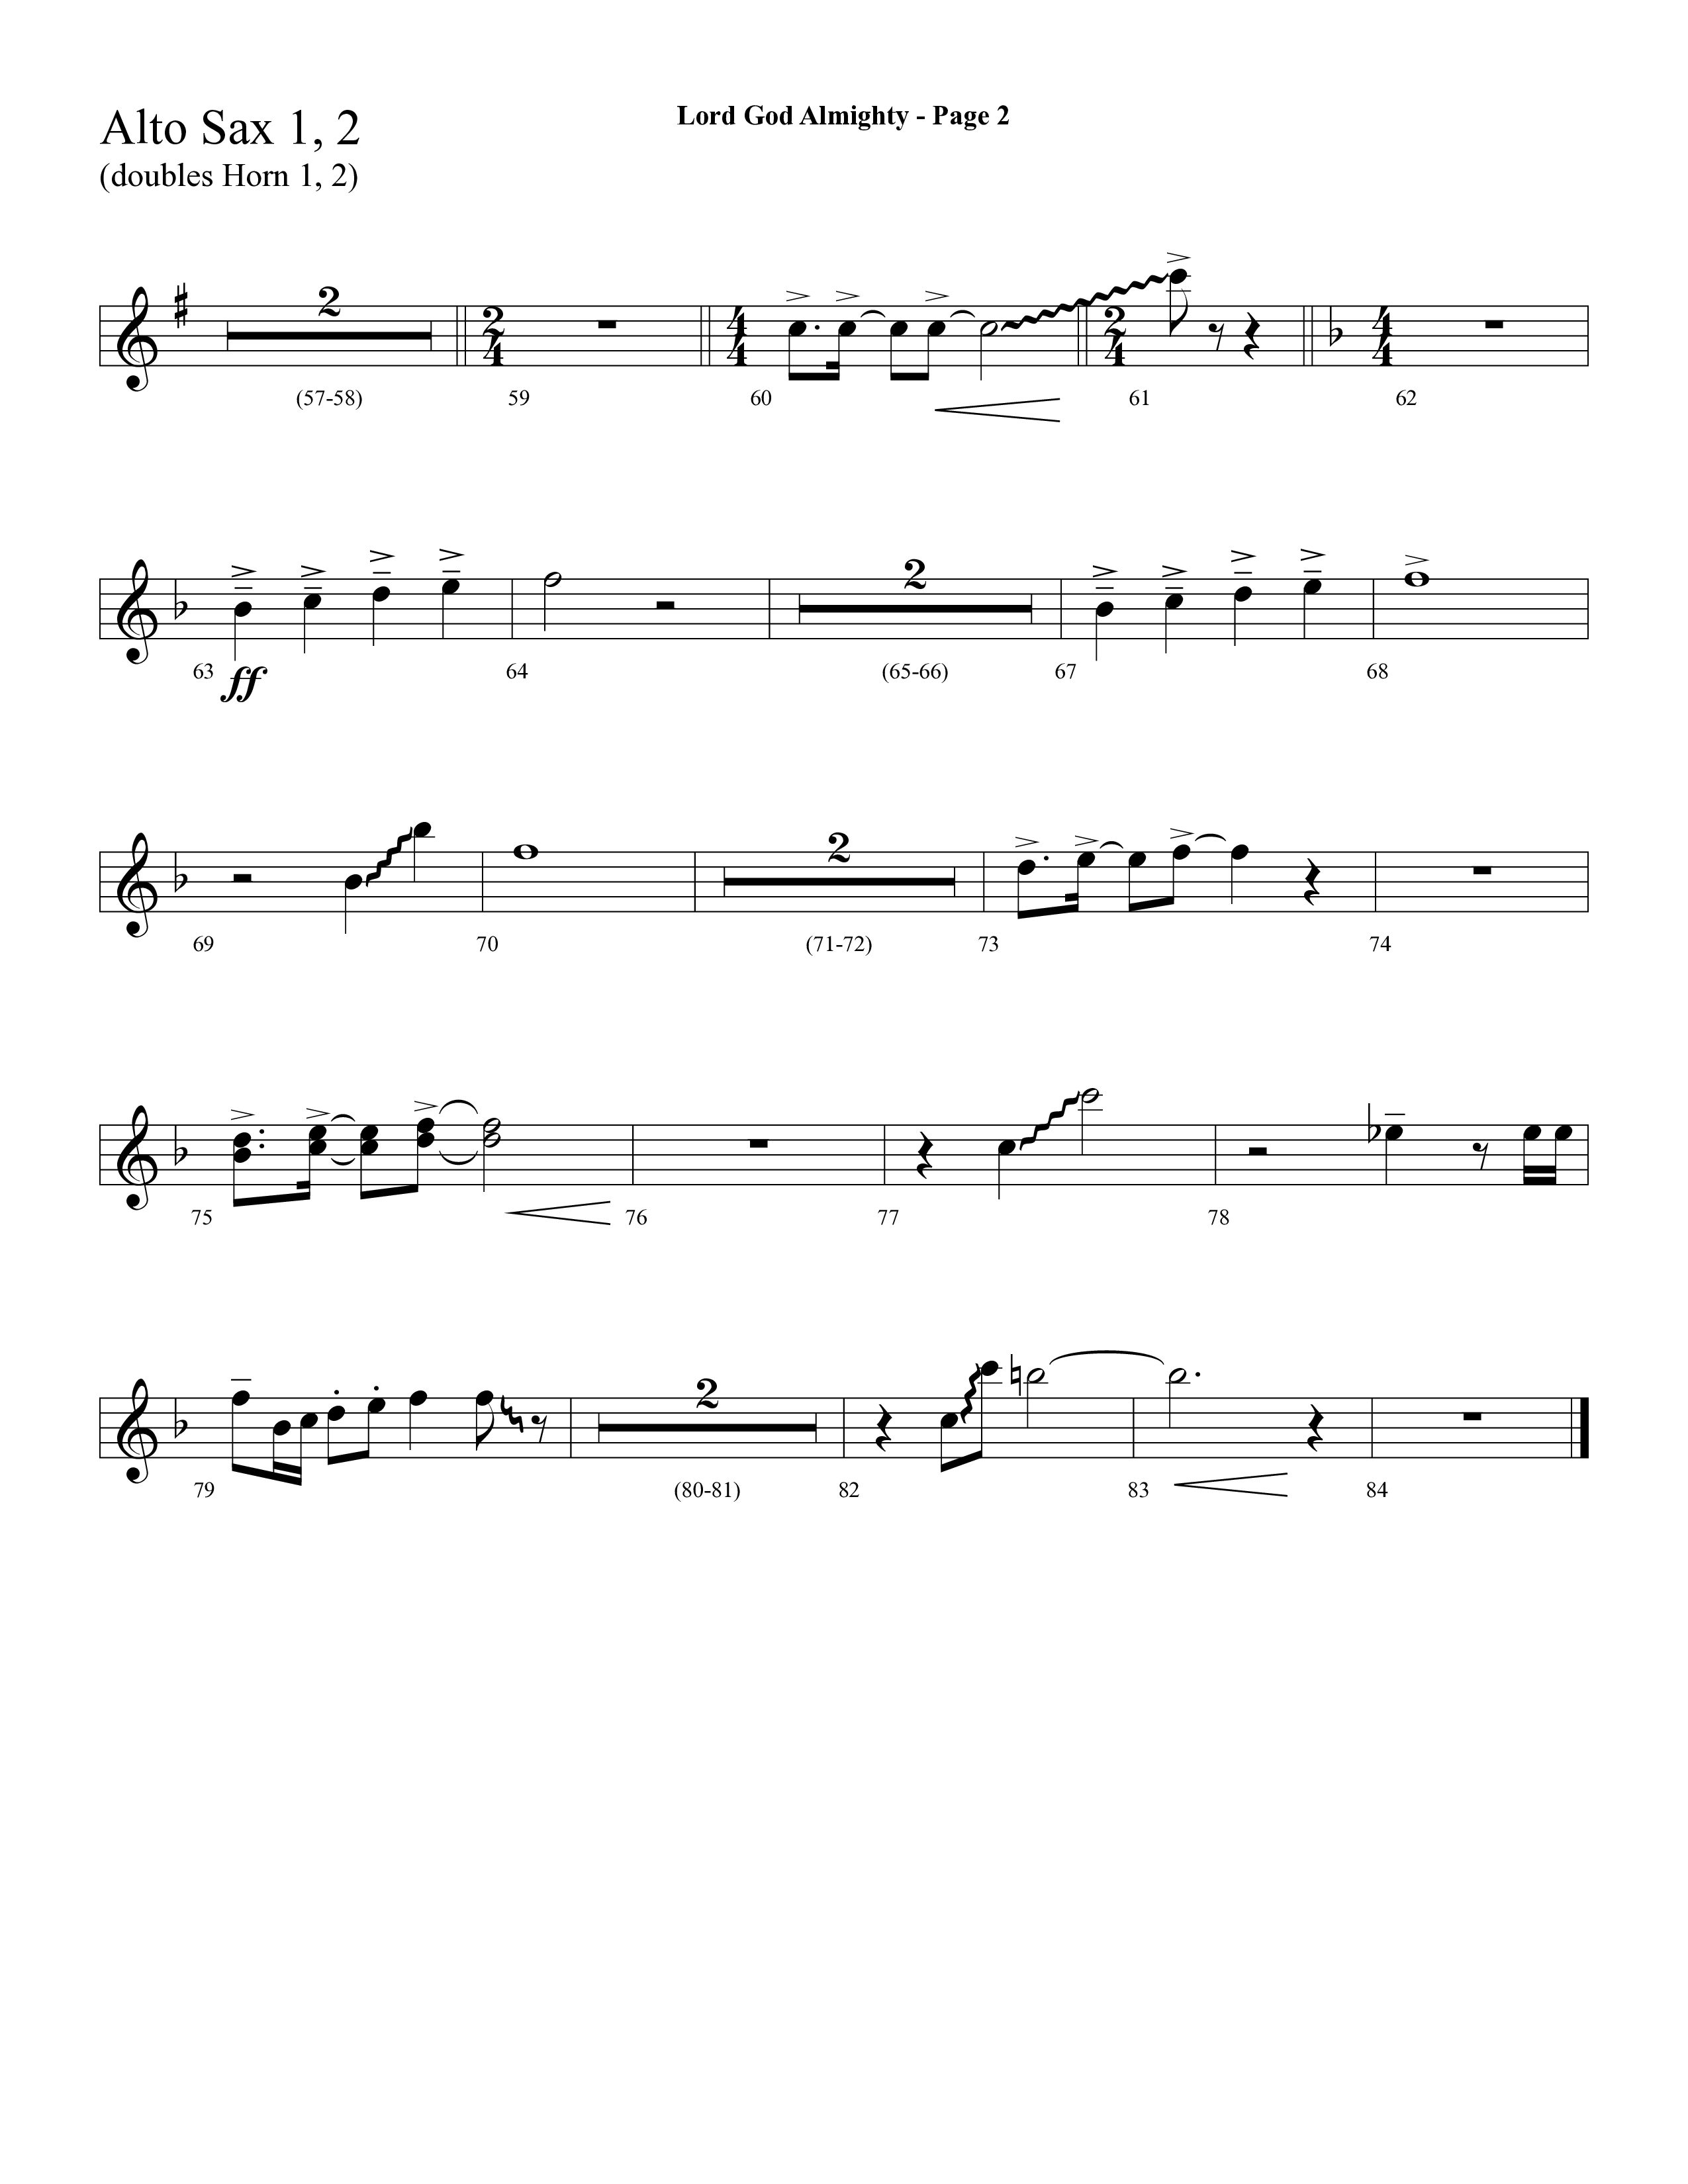 Lord God Almighty (Choral Anthem SATB) Alto Sax 1/2 (Lifeway Choral / Arr. Dave Williamson)